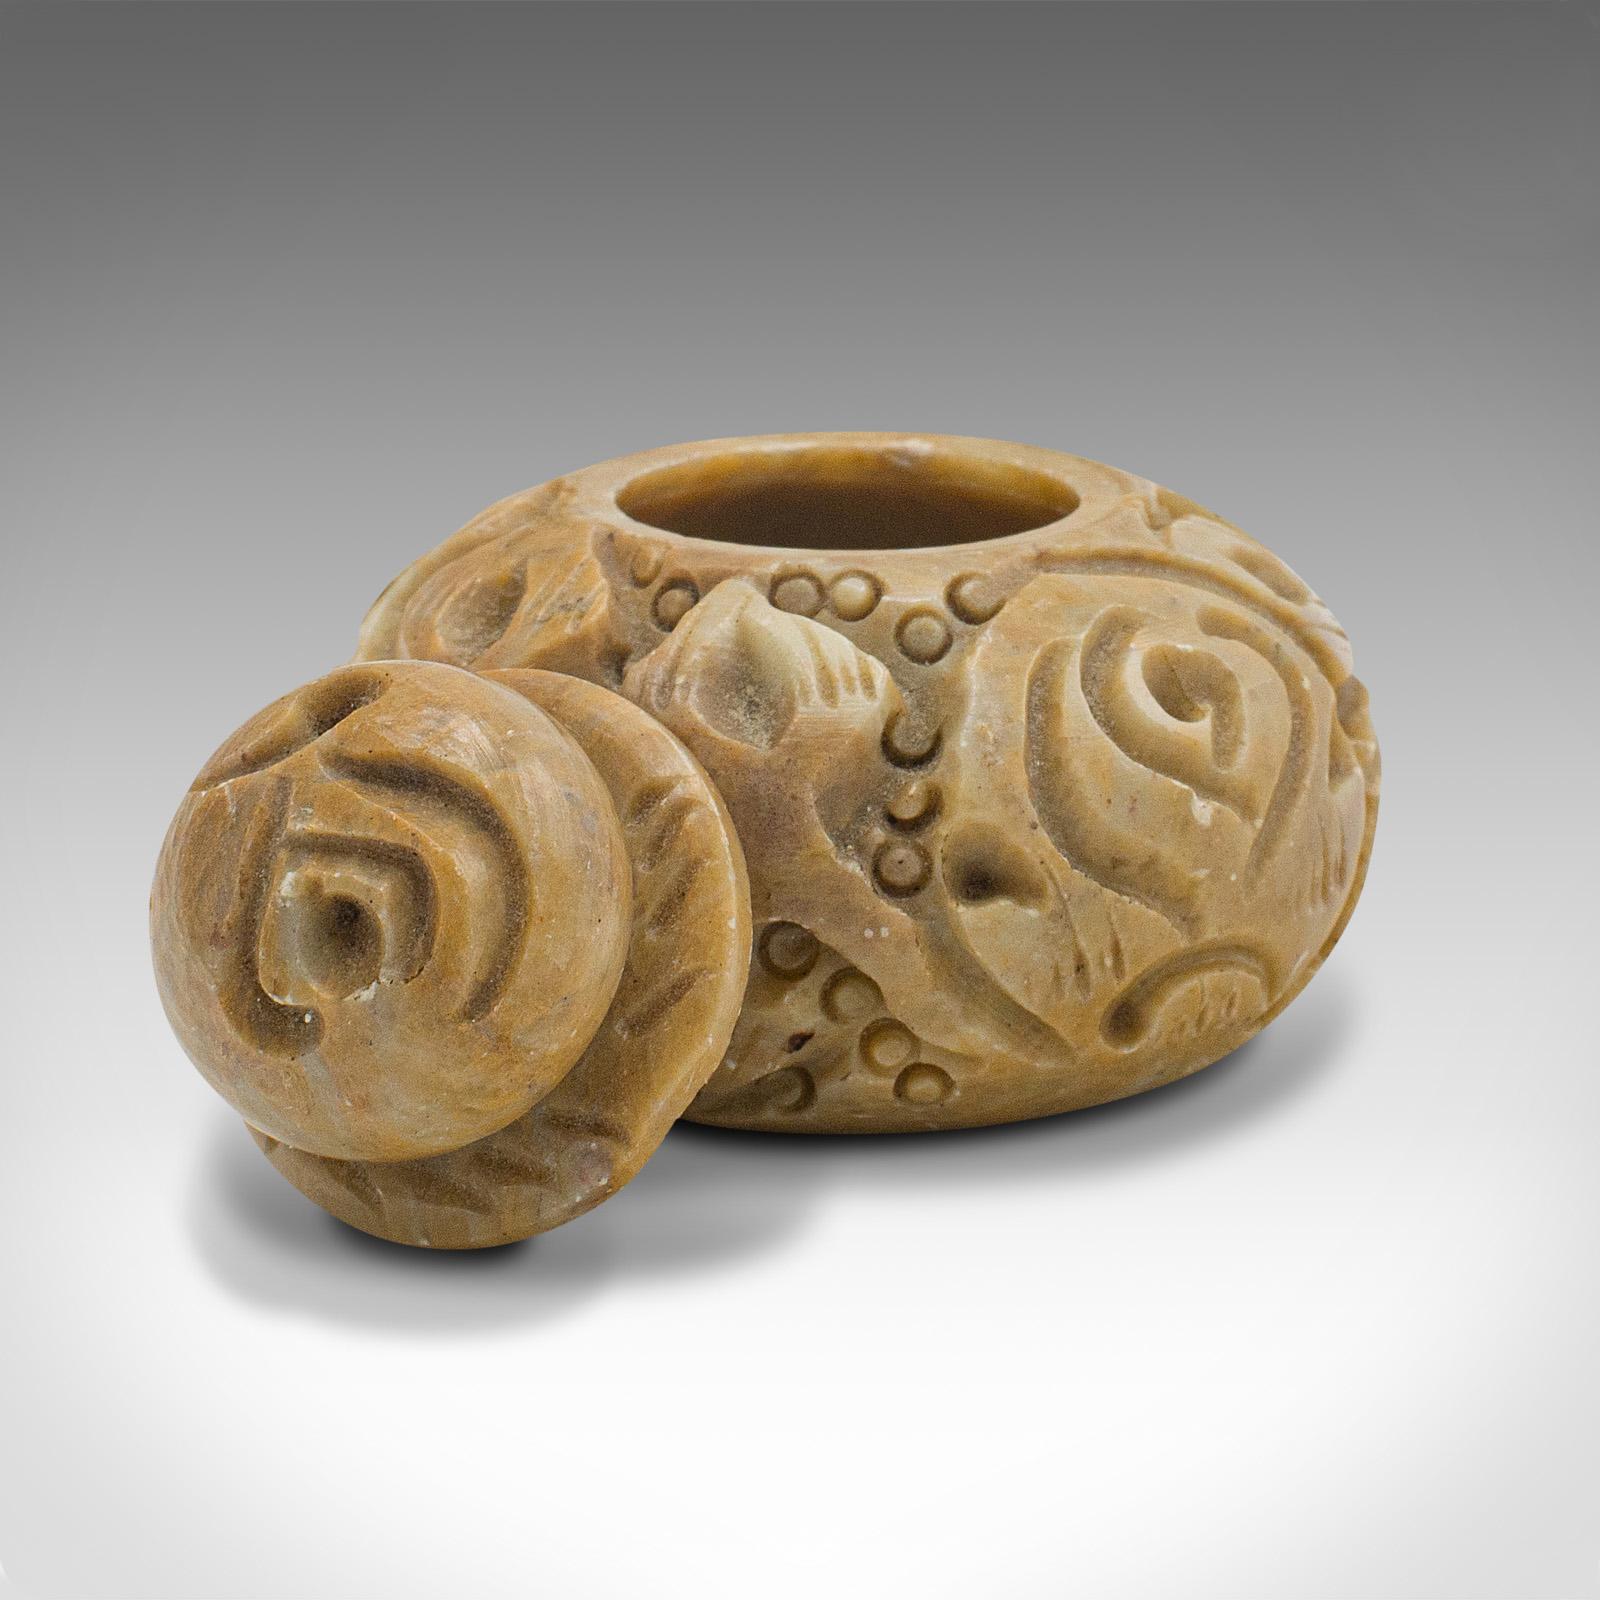 Dies ist eine sehr kleine antike Schnupftabakdose. Ein chinesischer, geschnitzter Marmor-Deckelkrug aus der spätviktorianischen Zeit, um 1900.

Auffallend zierlich, mit ansprechend geschnitztem Aussehen
Zeigt eine wünschenswerte gealterte Patina und